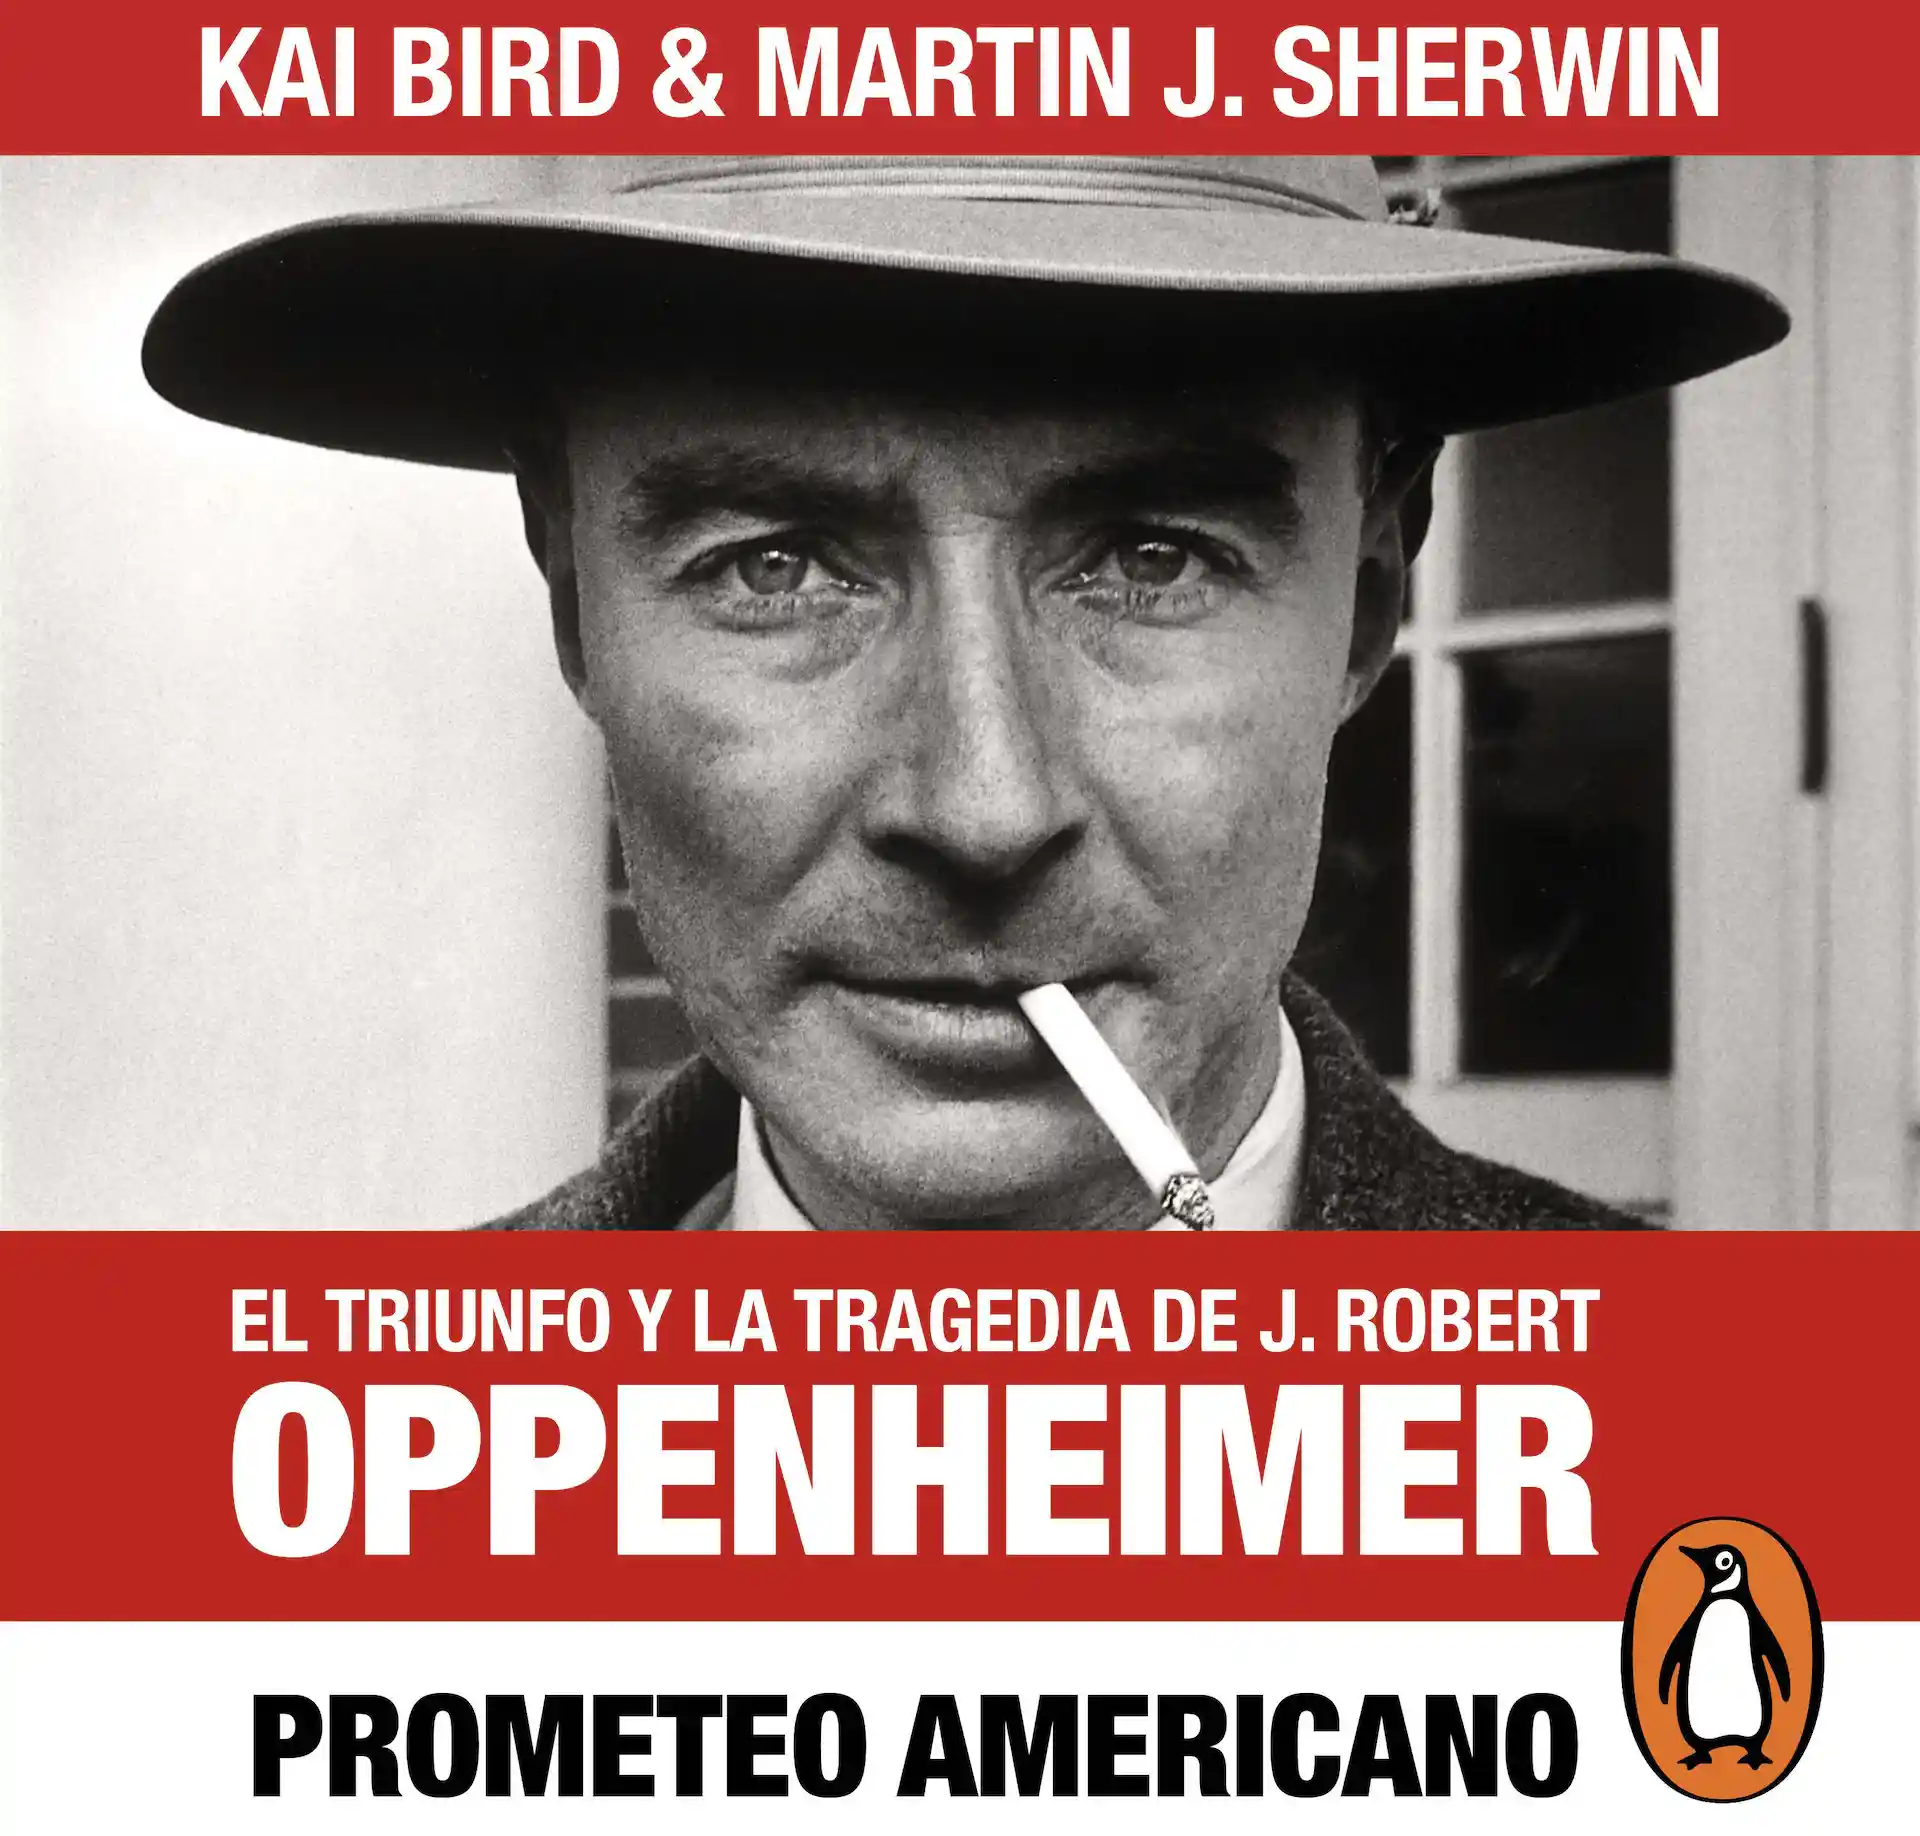 Cómo leer el libro en el que se basa la película Oppenheimer